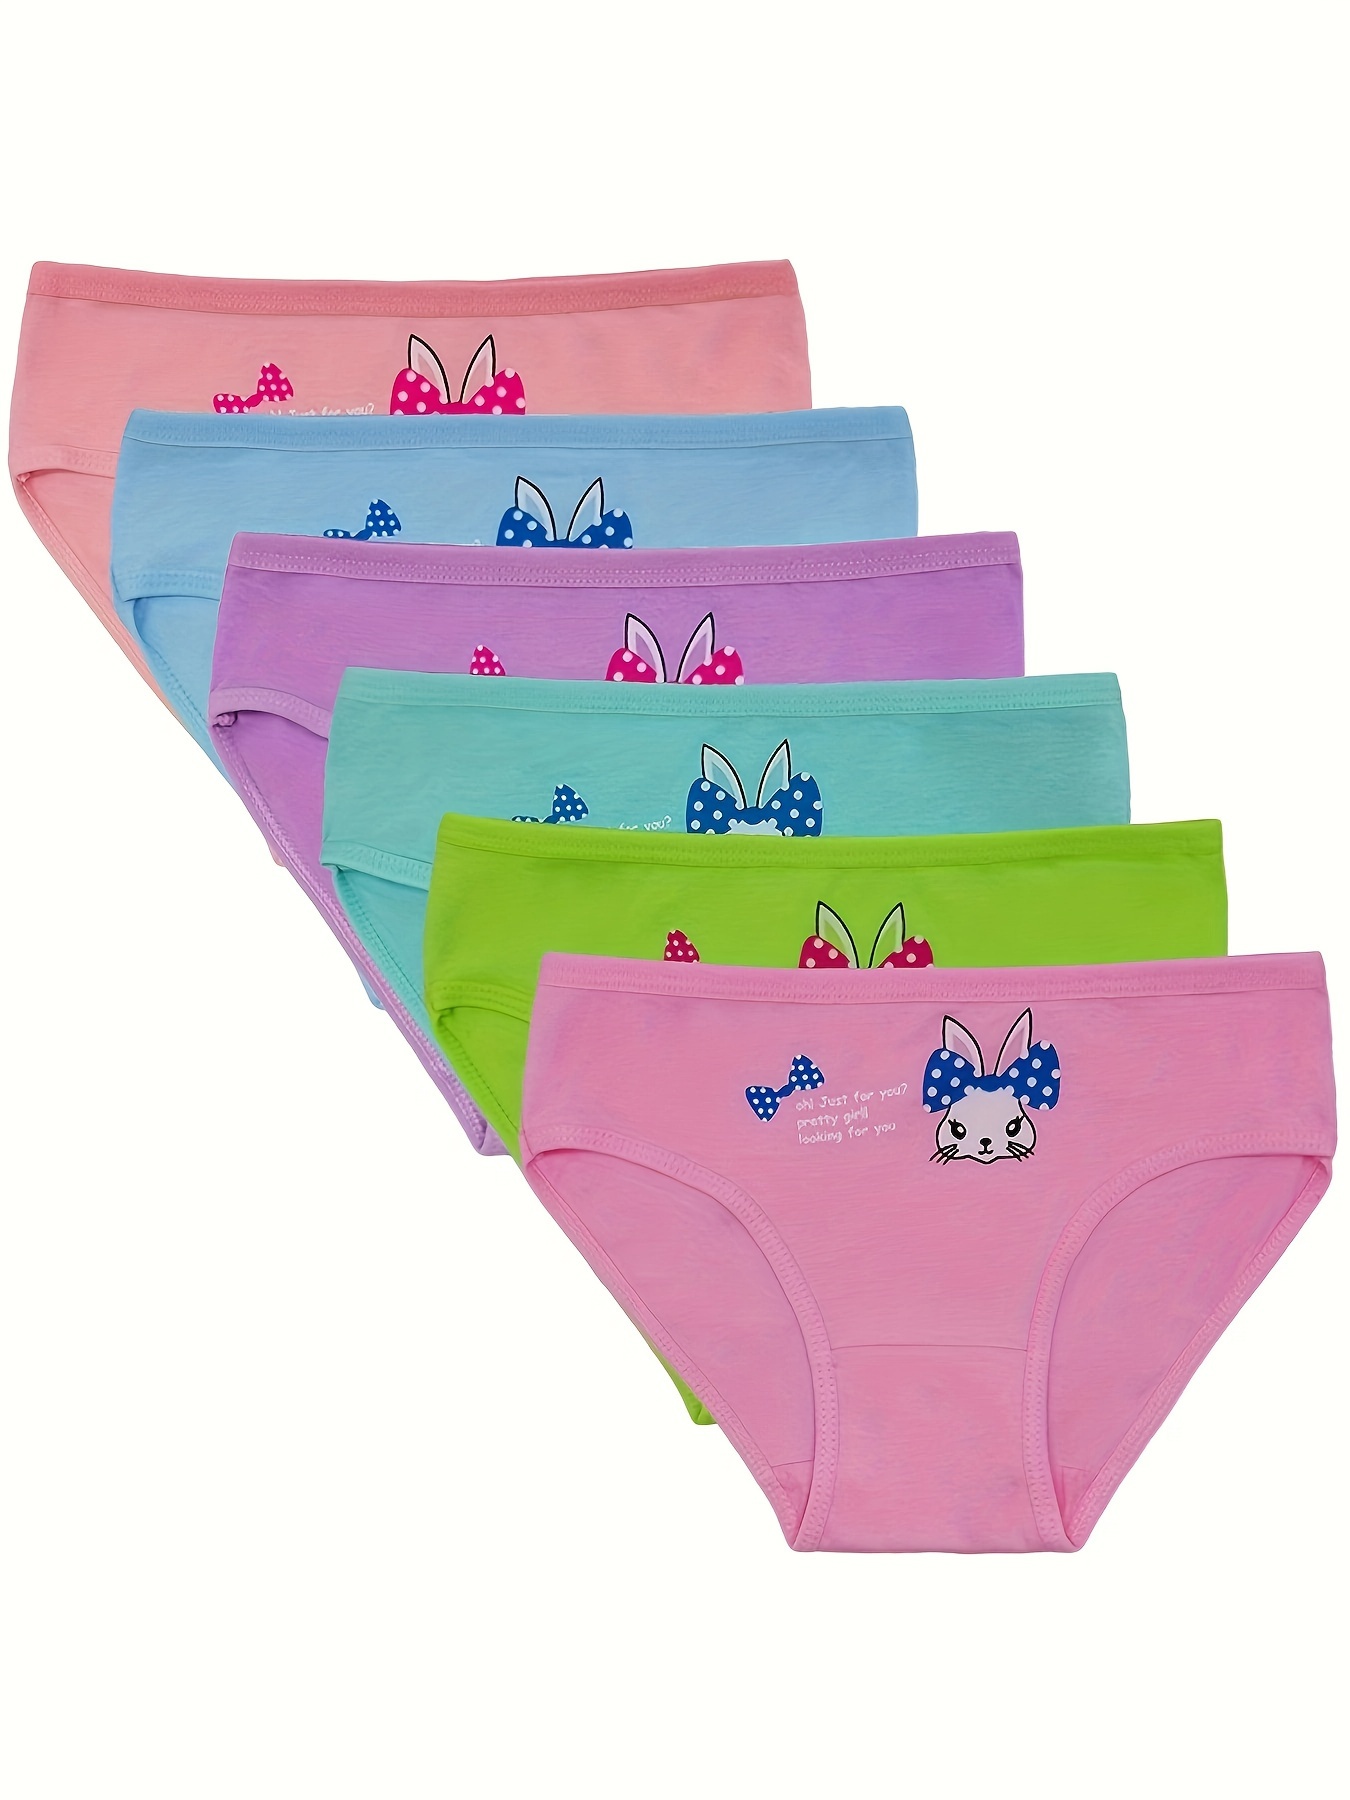 Kids Toddler Baby Girls Boys Underpants Cartoon Underwear Cotton Briefs  Trunks 4PCS Underwear Girls 7 Girls Size 5t Underwear 